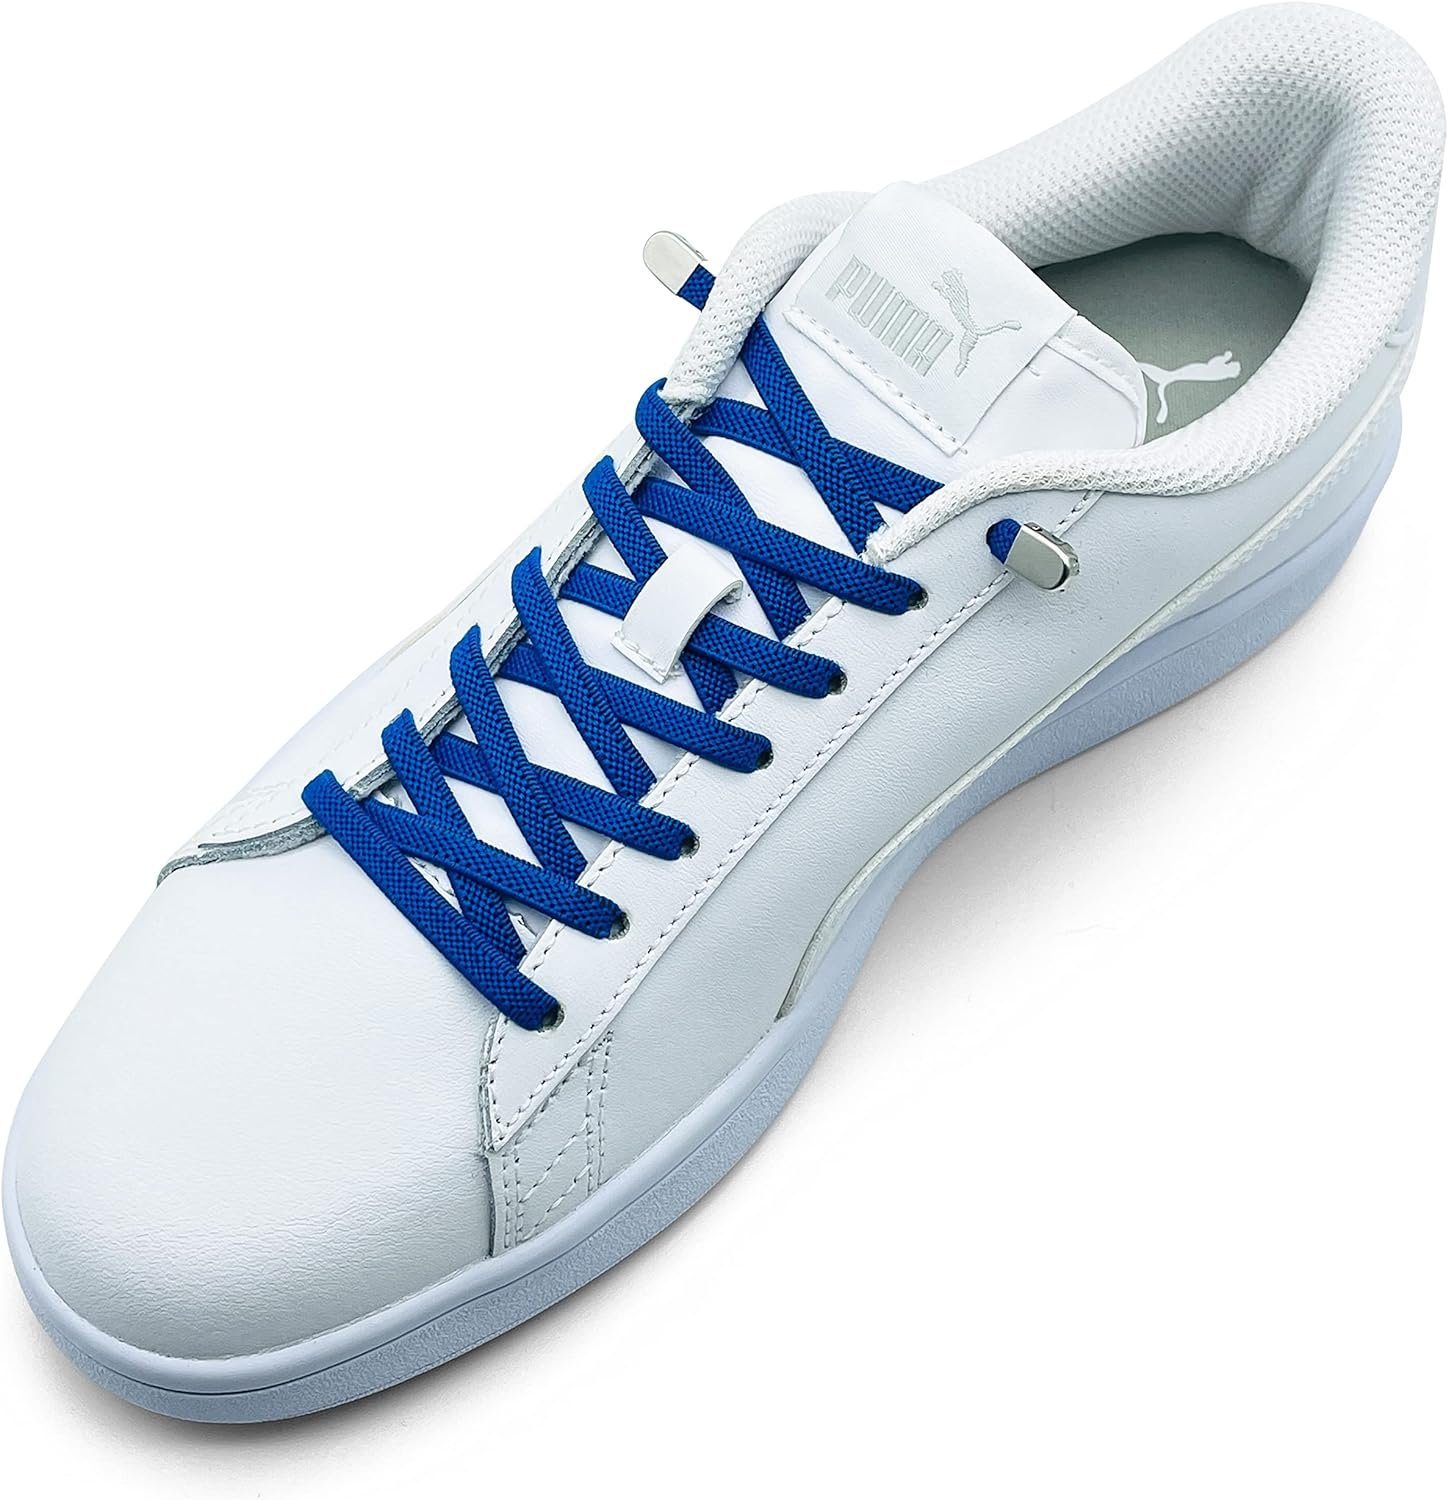 St. 8 Enden blau mit Paar 4 Clips, in inkl. Stück Schnürsenkel 2 für elastische - silber ELANOX (Clips) Schuhe Schnürsenkel